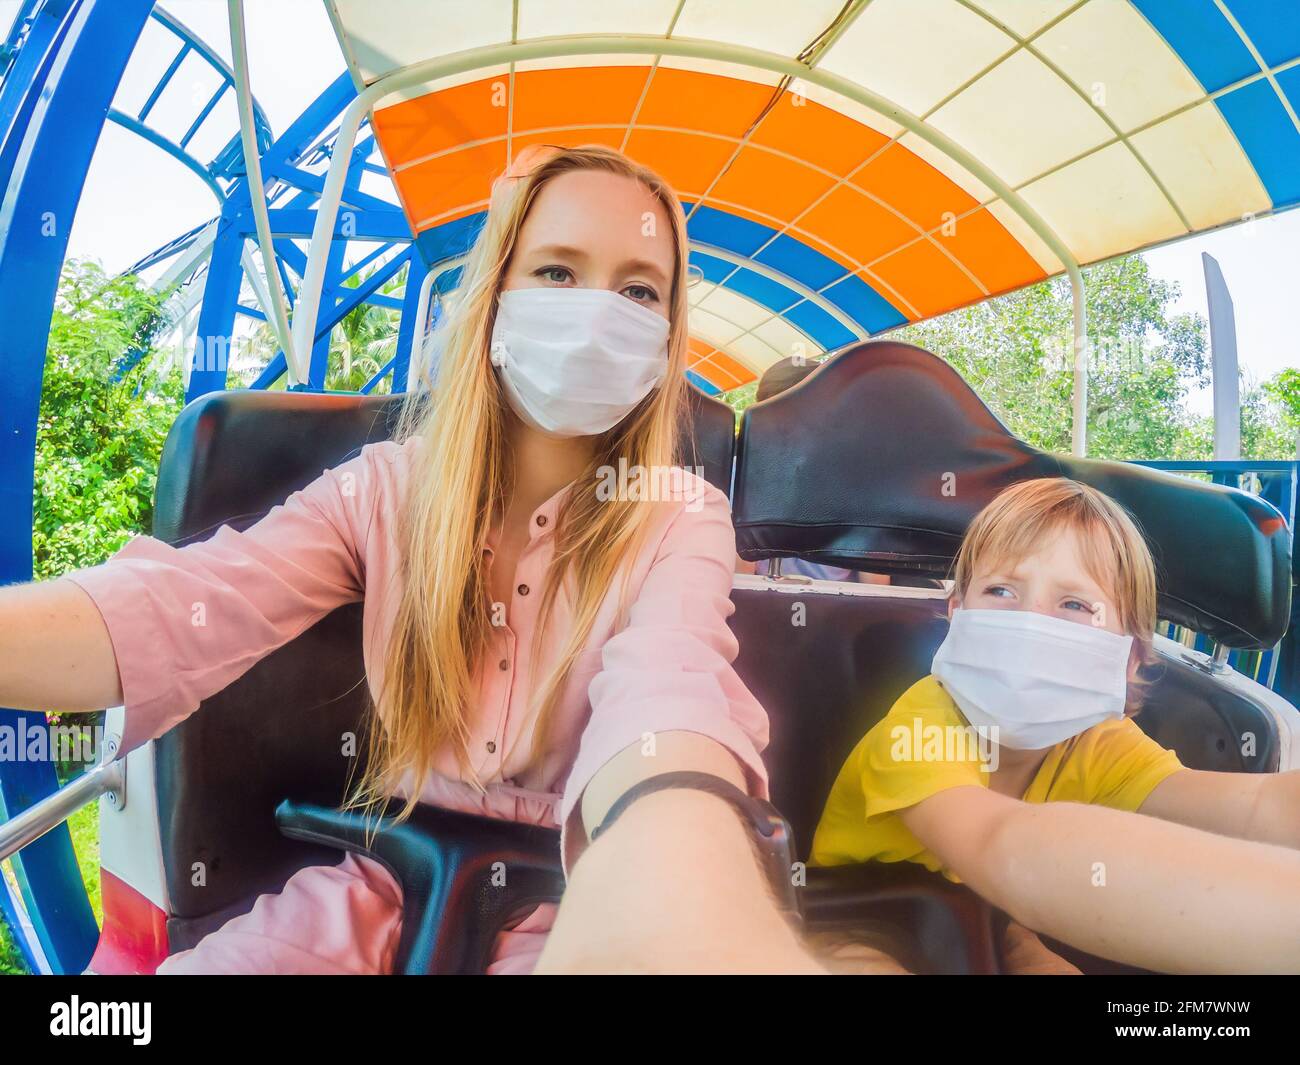 Famille portant un masque médical pendant le coronavirus COVID-19 à an parc d'attractions Banque D'Images